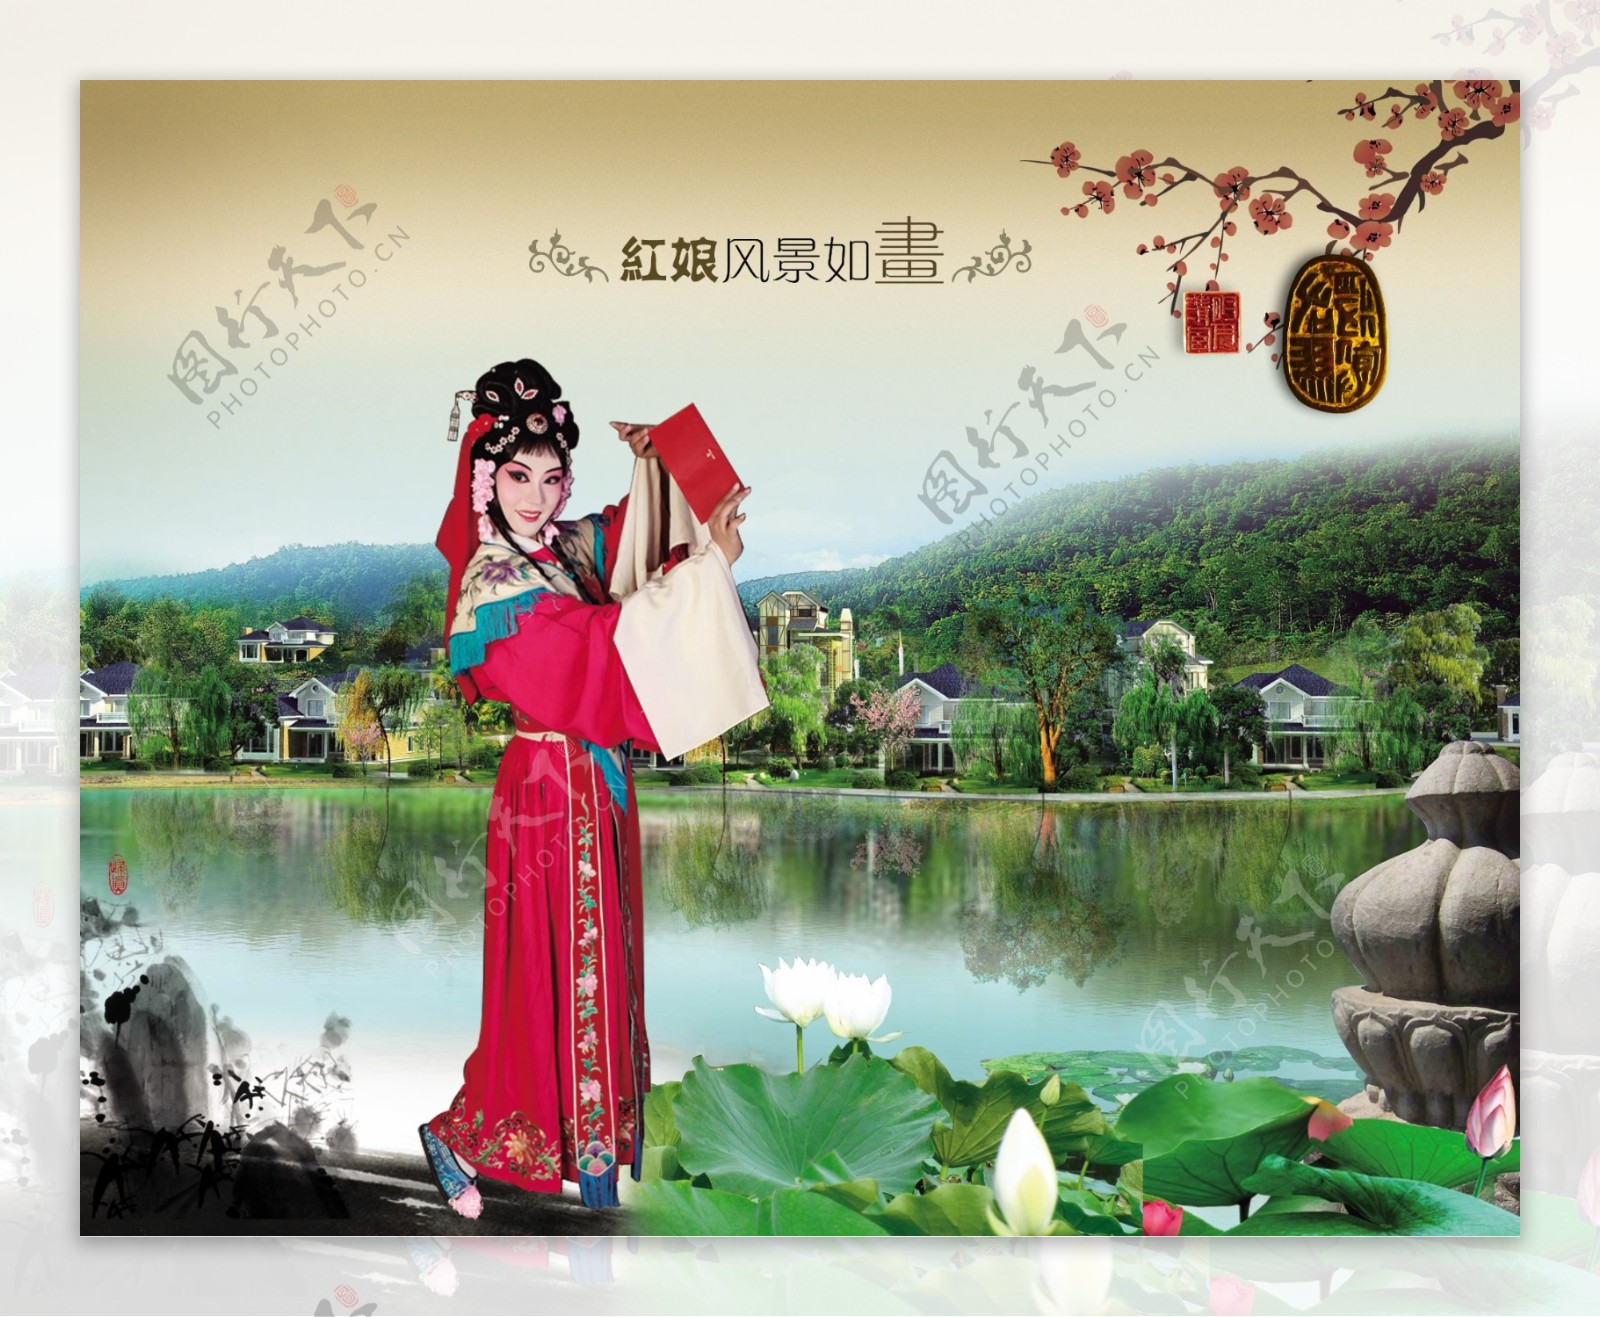 京剧戏曲中国风红娘图片